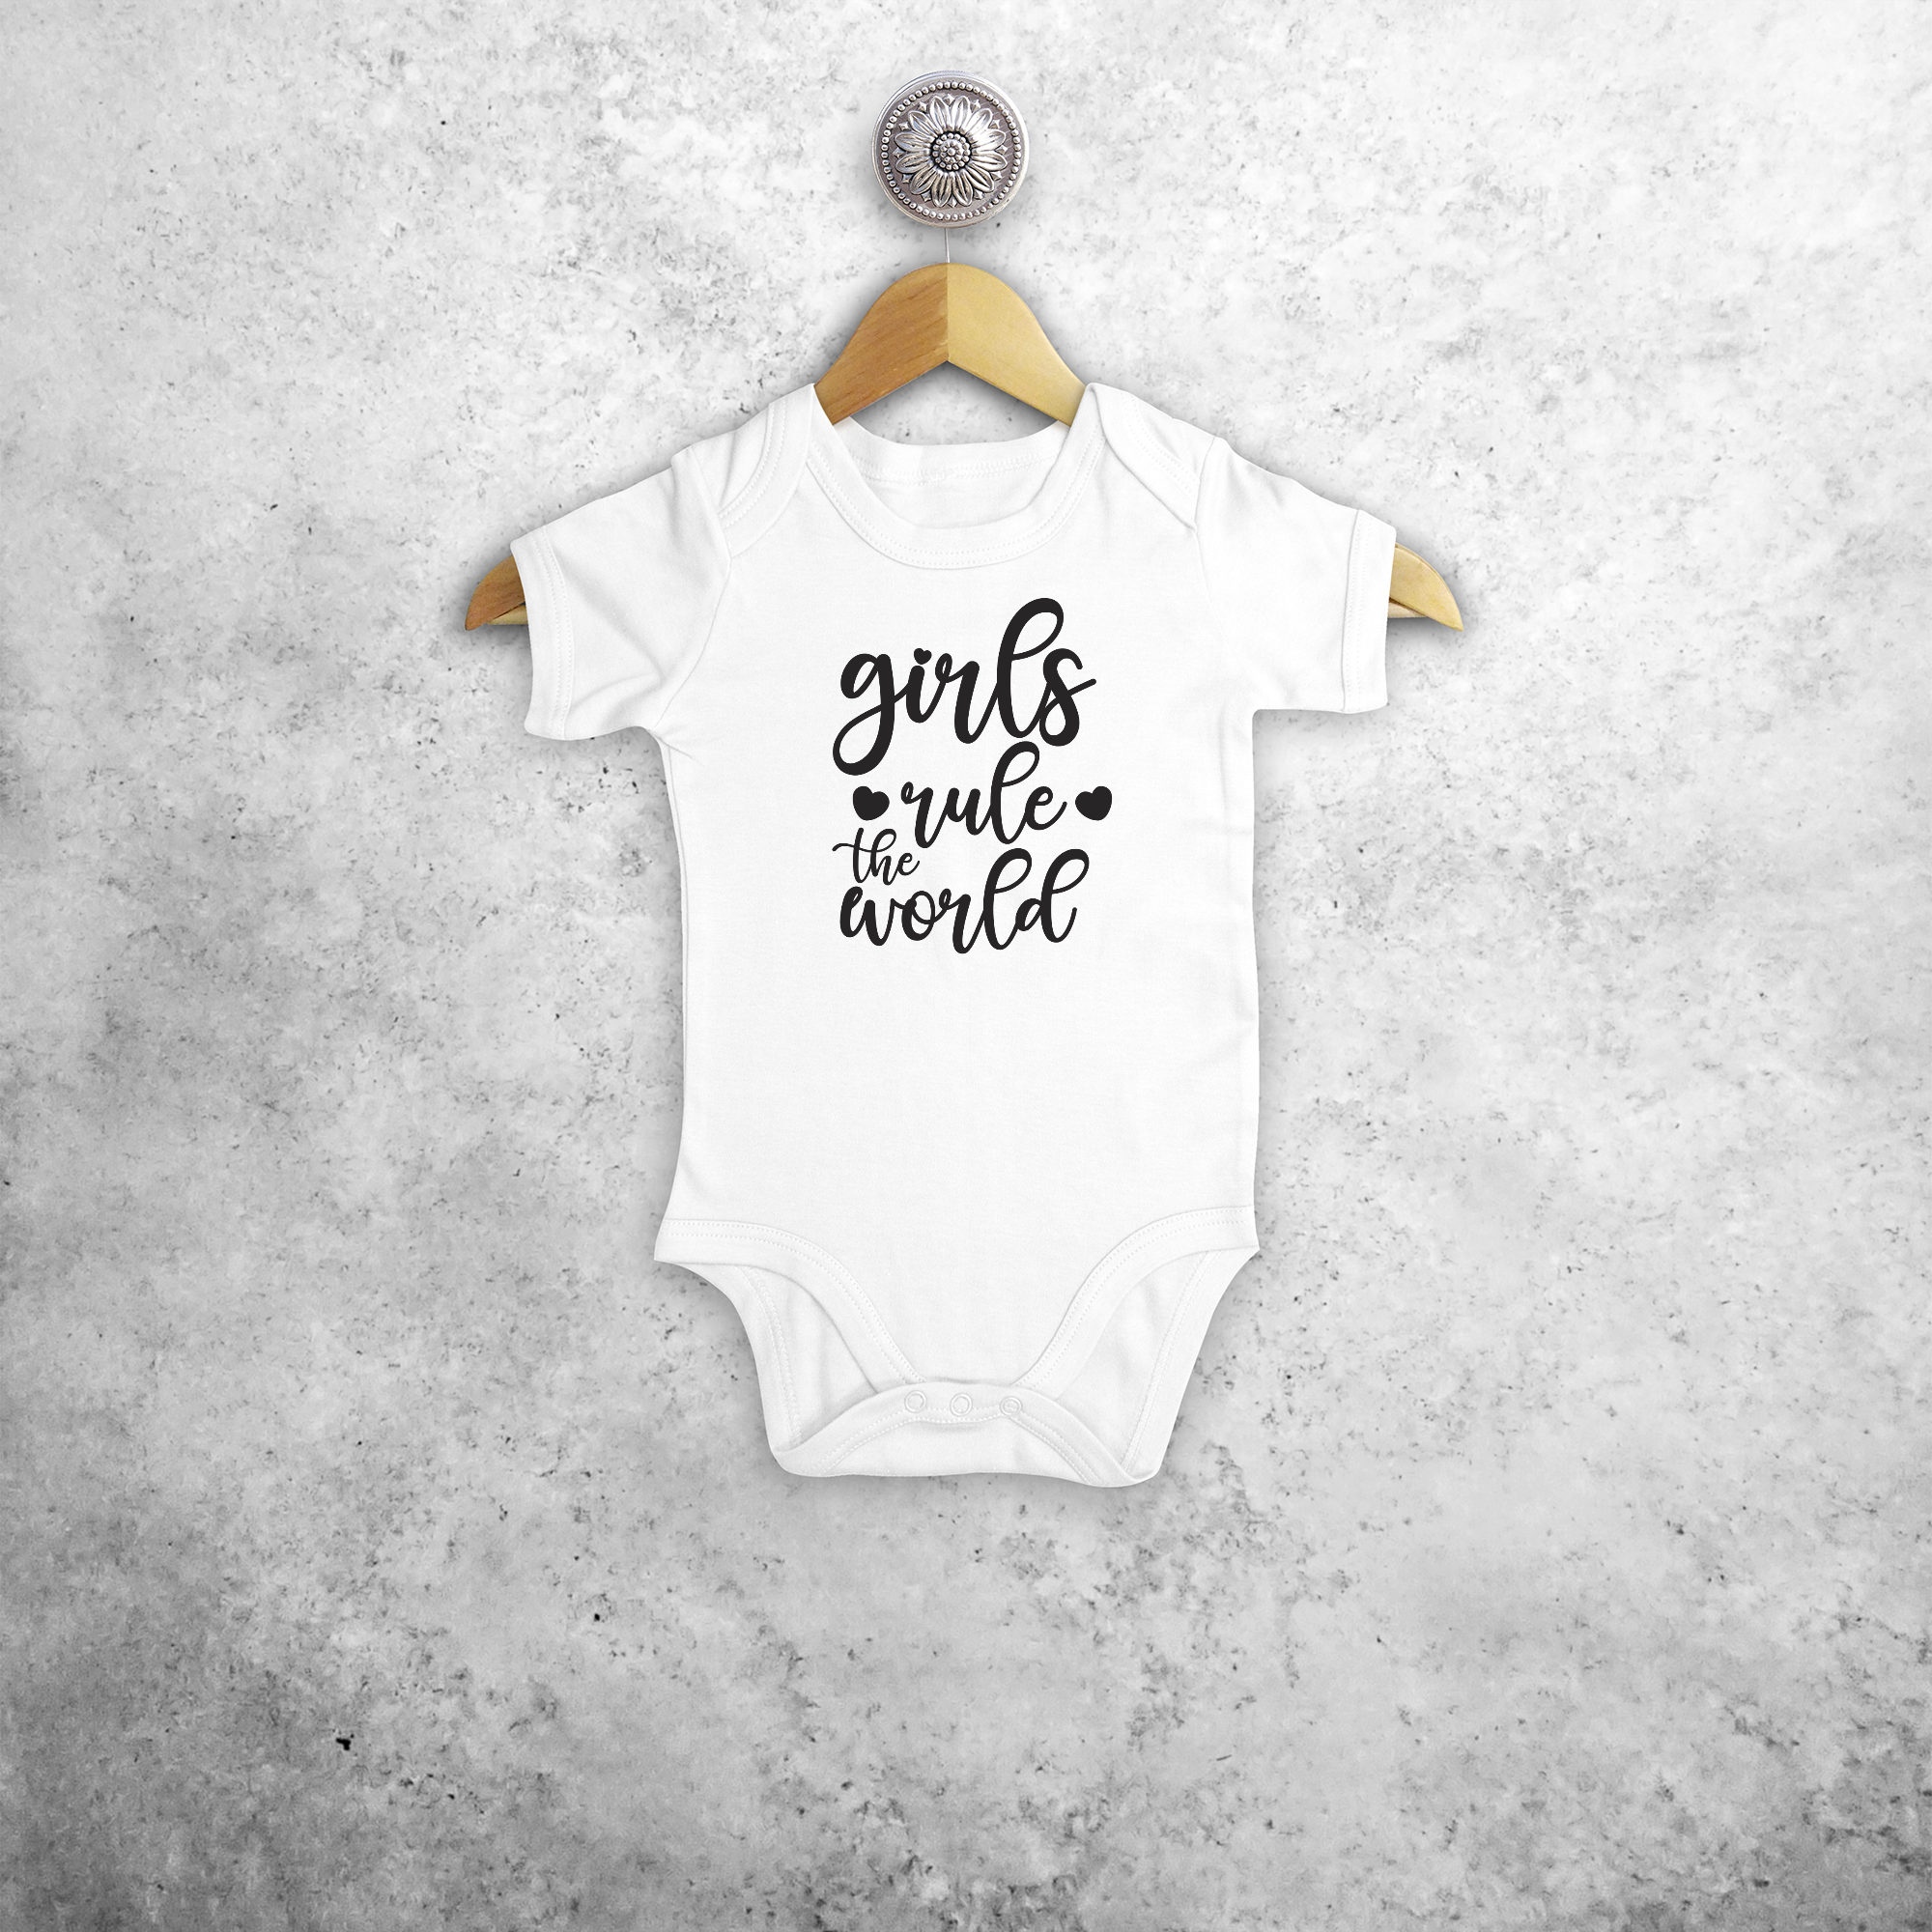 'Girls rule the world' baby kruippakje met korte mouwen